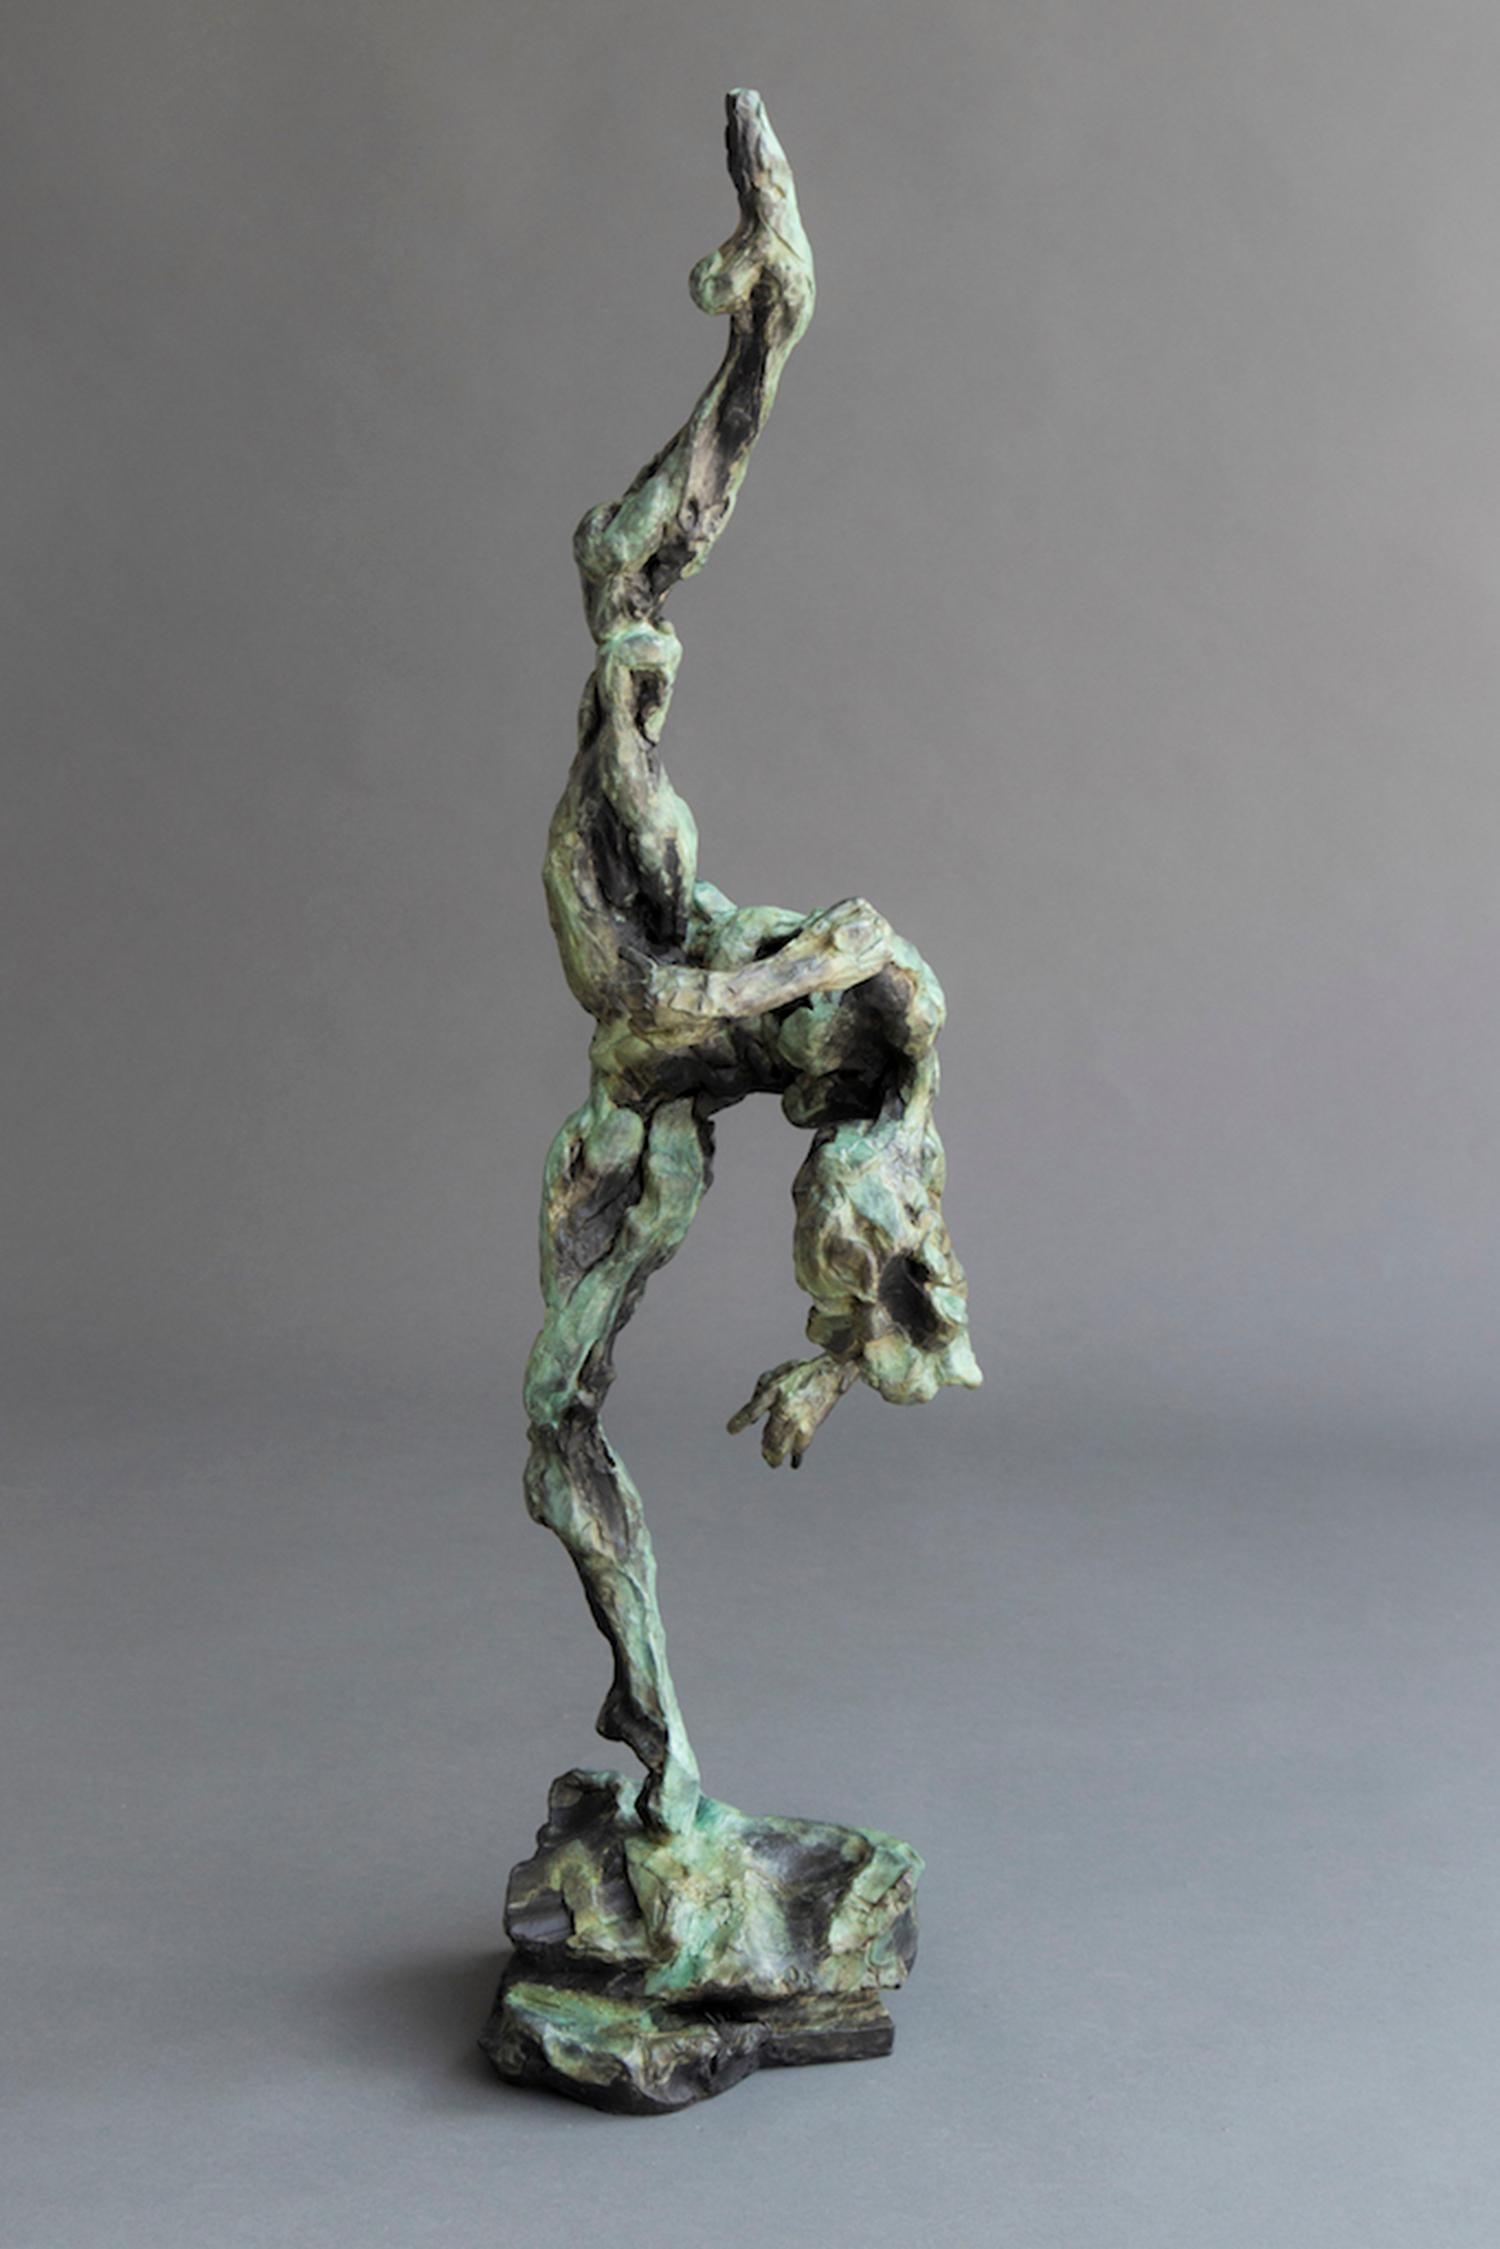 Cette statuette en bronze d'une danseuse nue, aux orteils pointus, aux jambes fines tendues et au torse angoissé, a été créée rapidement dans des gestes qui frôlent l'abstraction. Le formalisme moderne et dynamique qui s'écarte du réalisme permet au